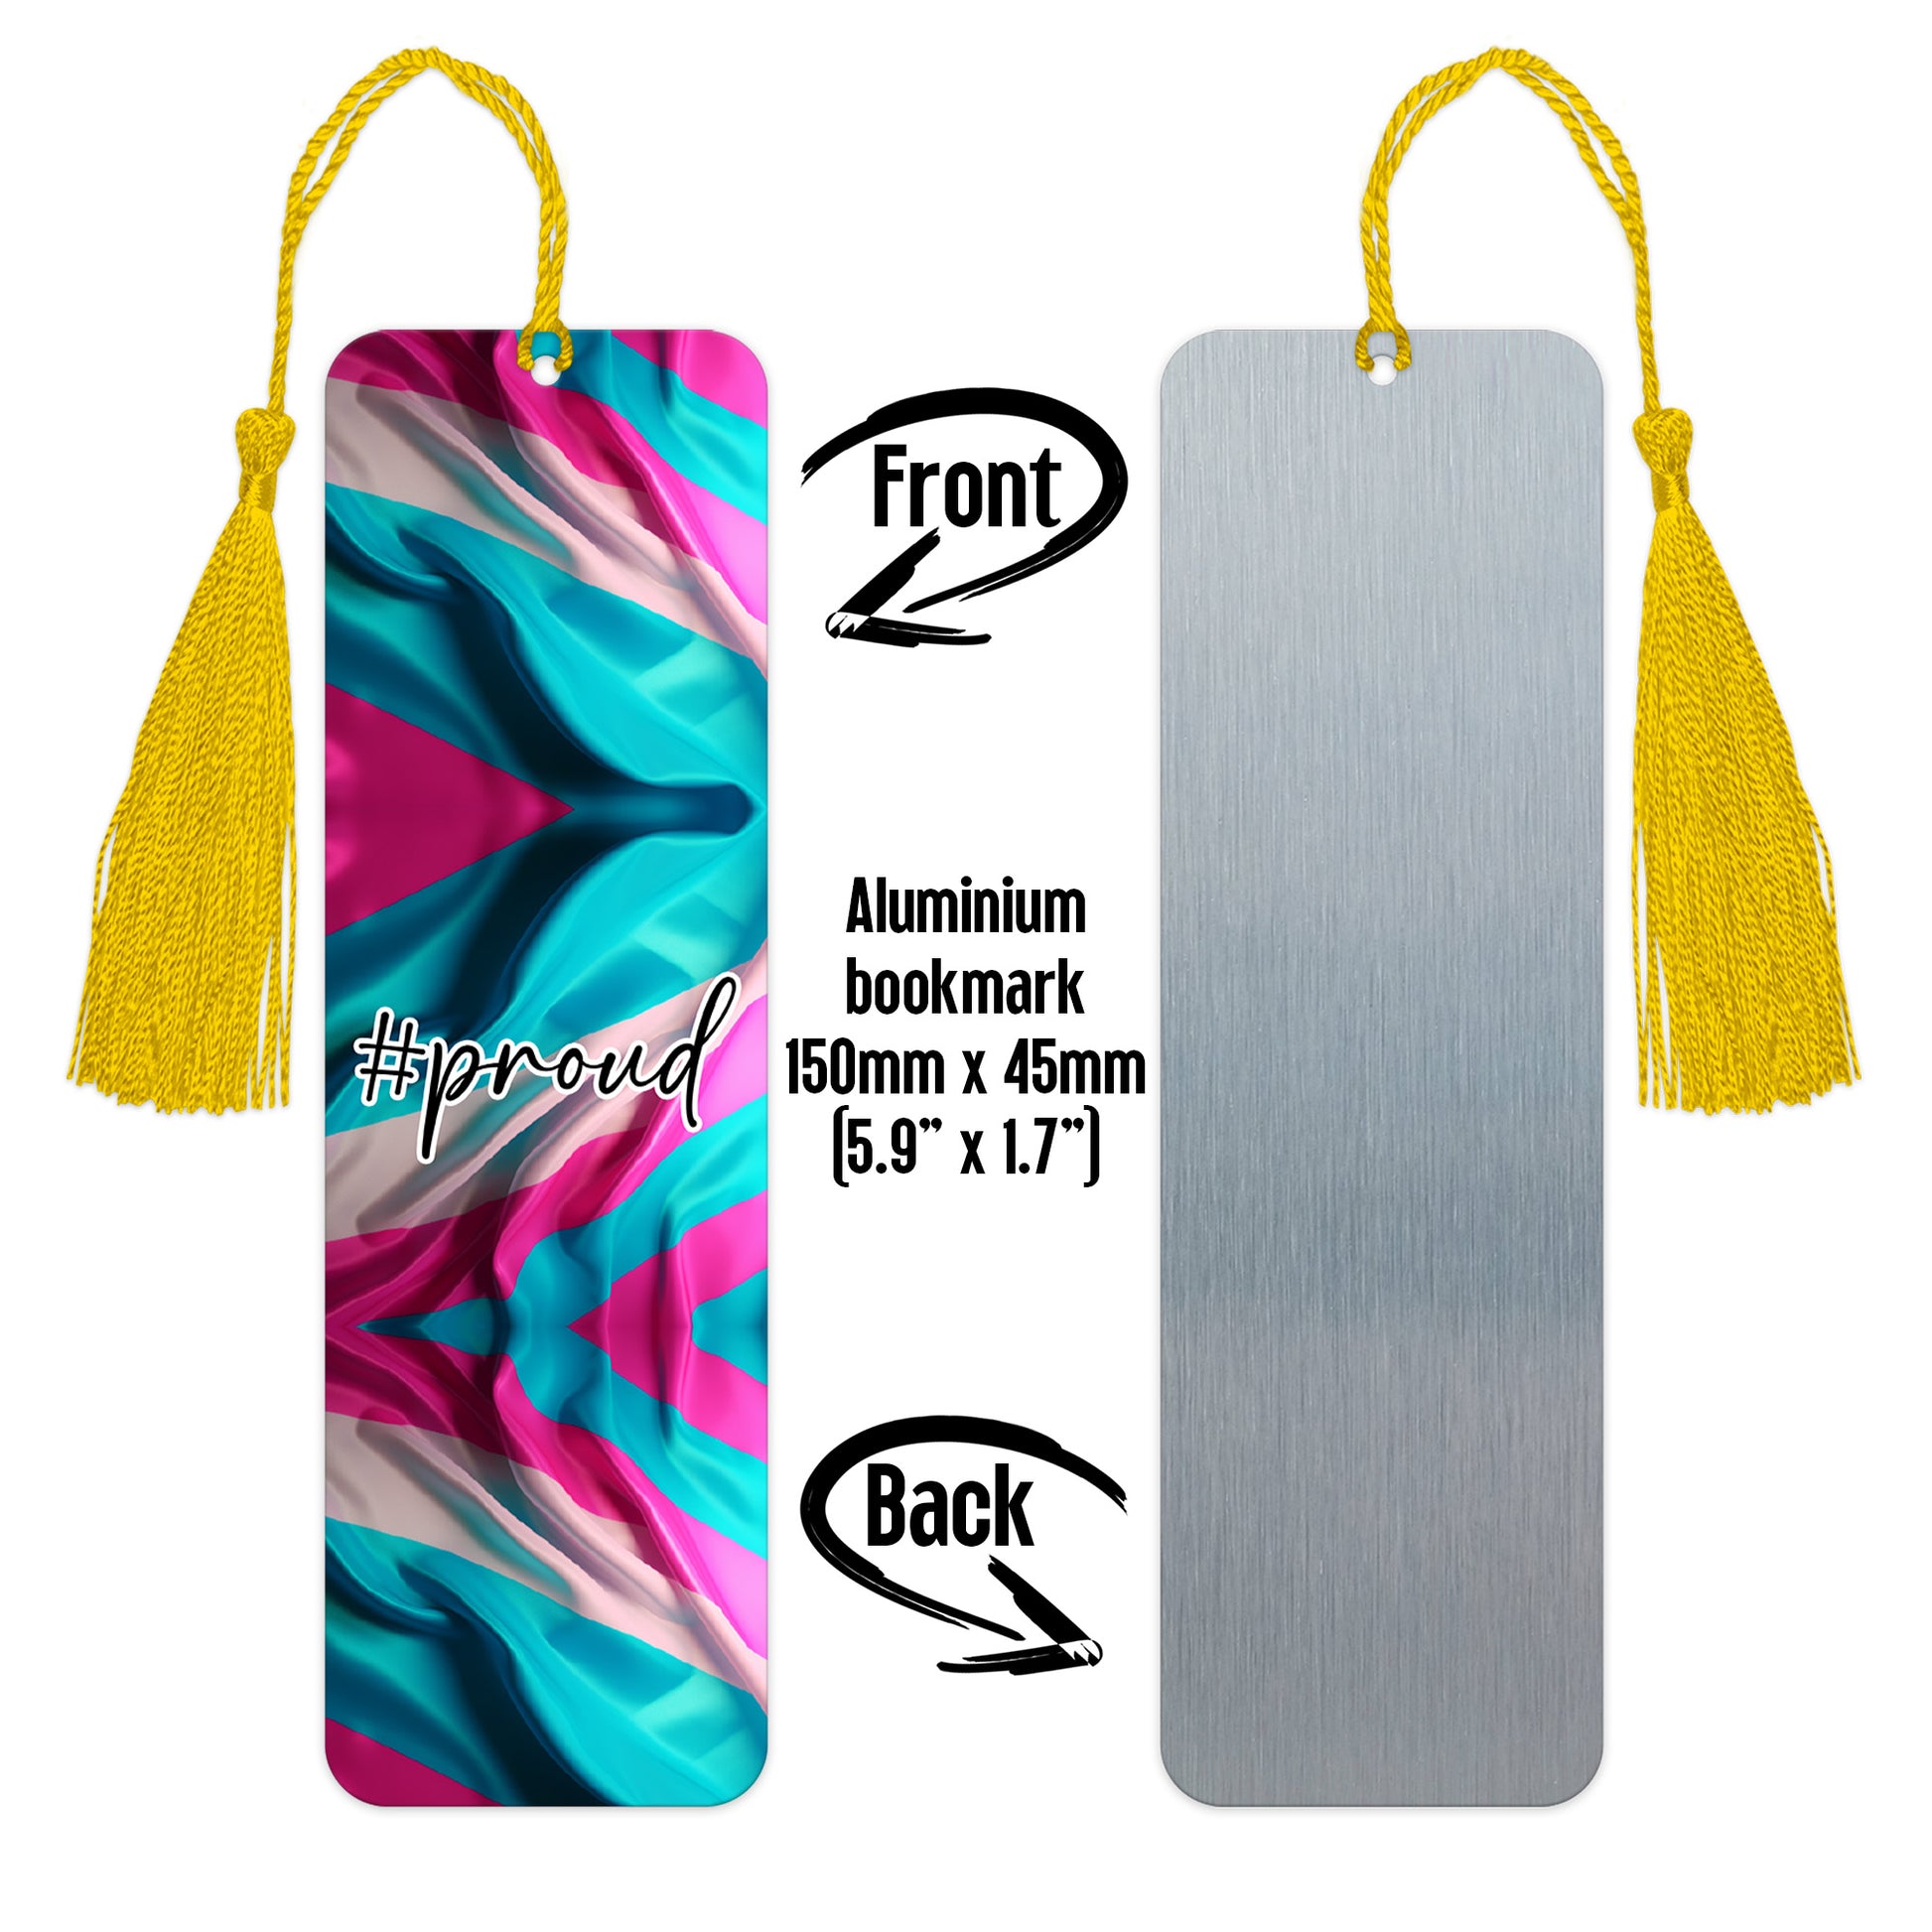 Trans and proud luxury aluminium bookmark